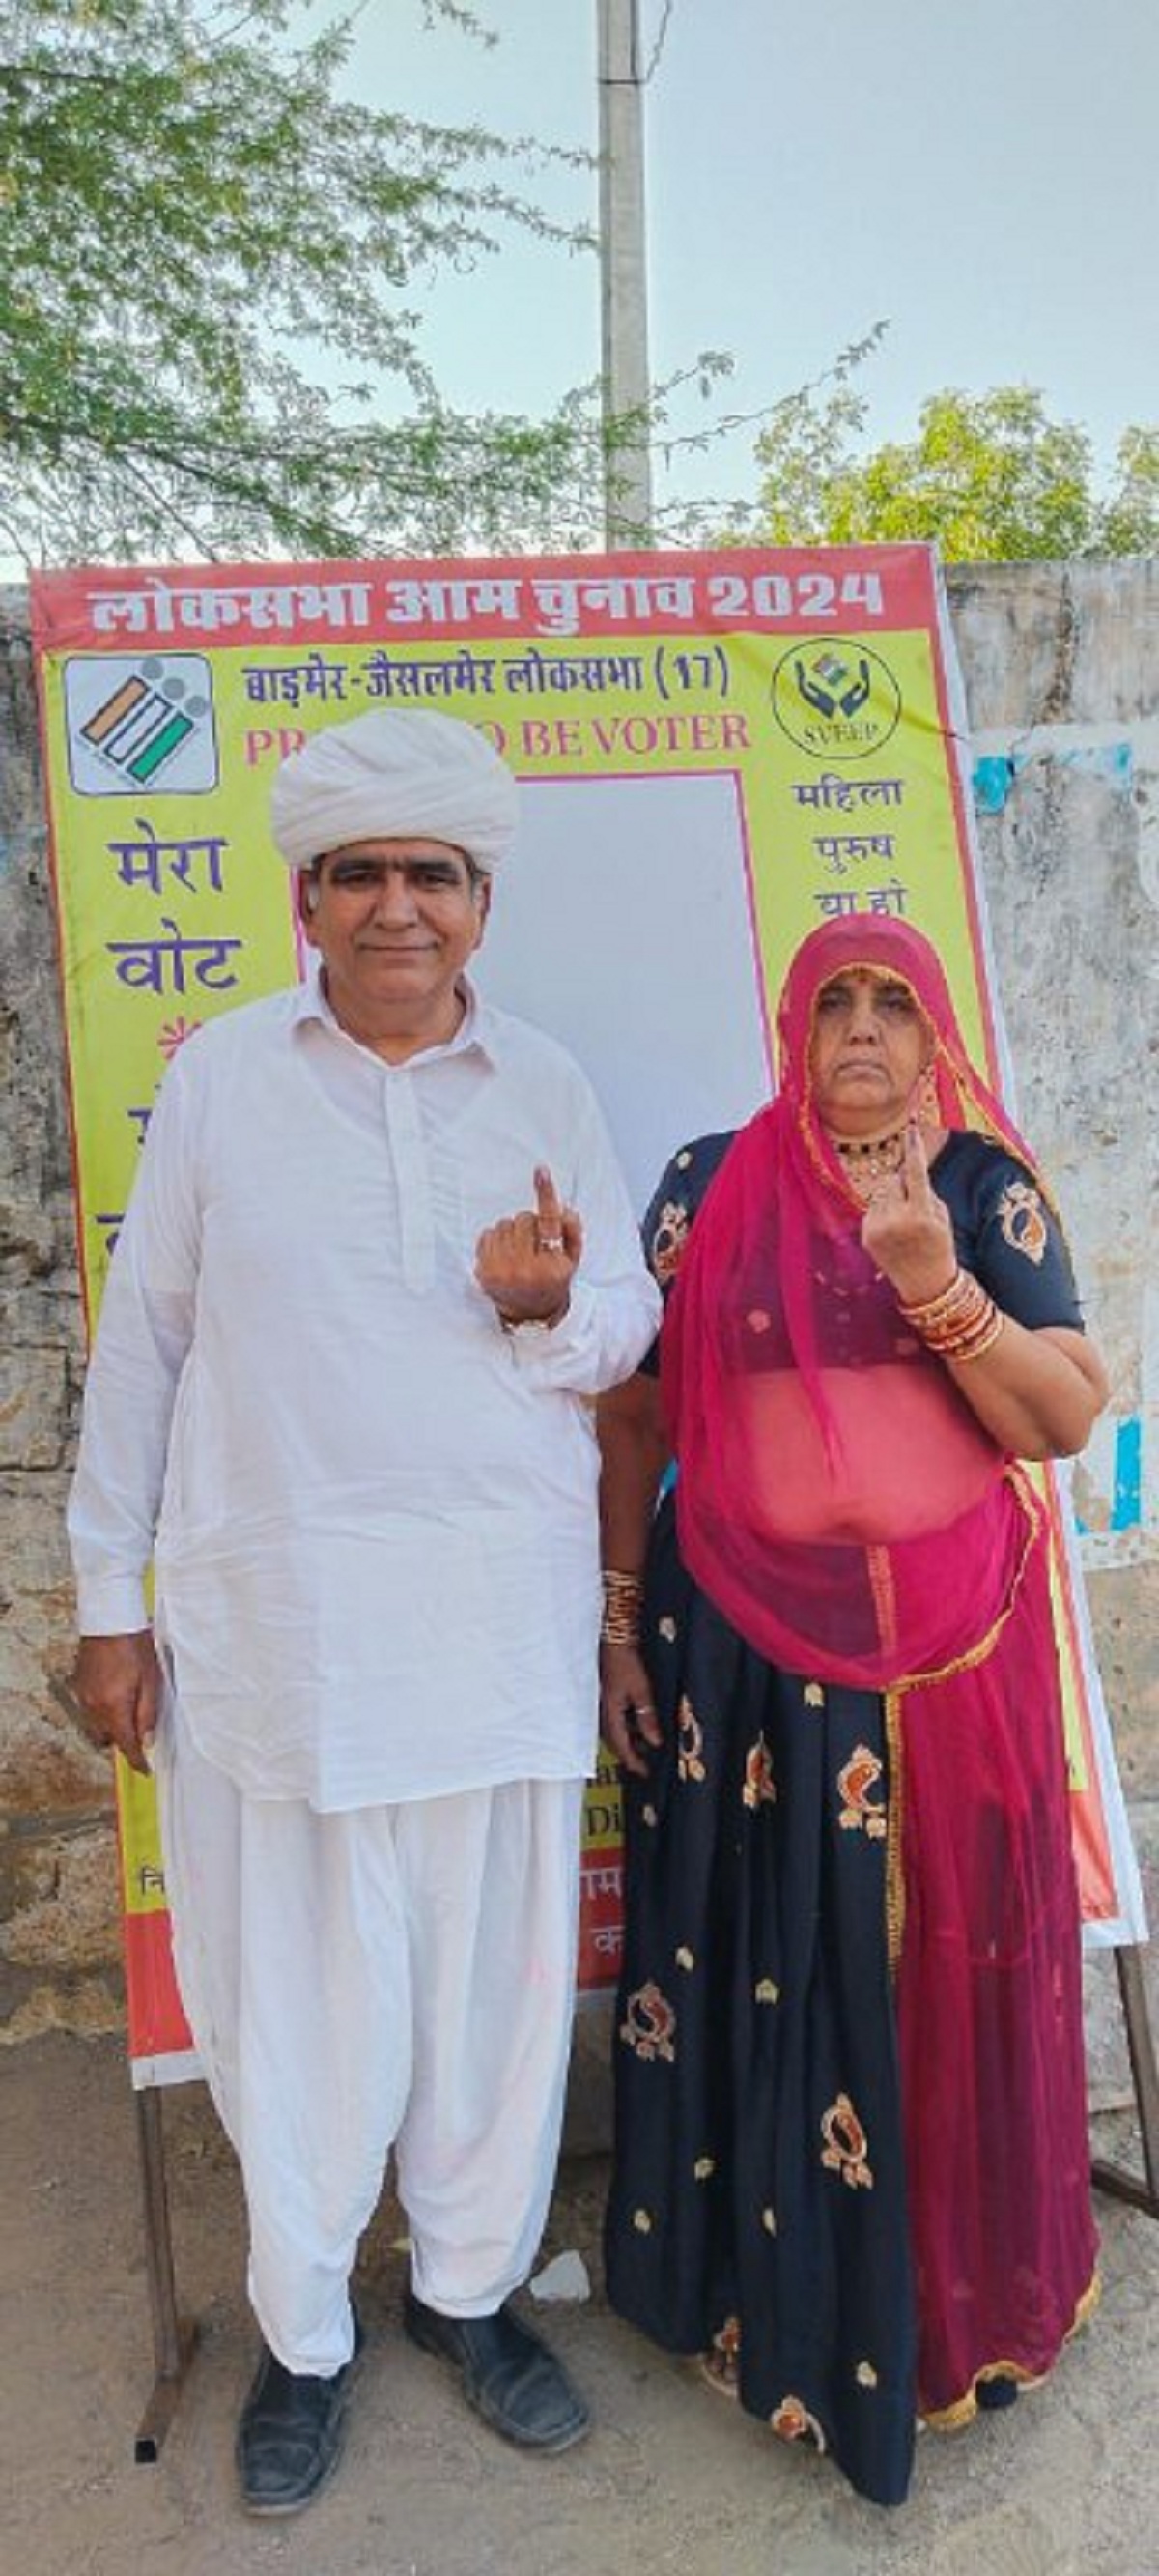 लोकतंत्र का उत्सव: कर्नाटक से राजस्थान जाकर लिया मतदान में हिस्सा, समझी वोट की
अहमियत, चुनाव से पहले उम्मीदवारों ने पीले चावल देकर की थी मनुहार